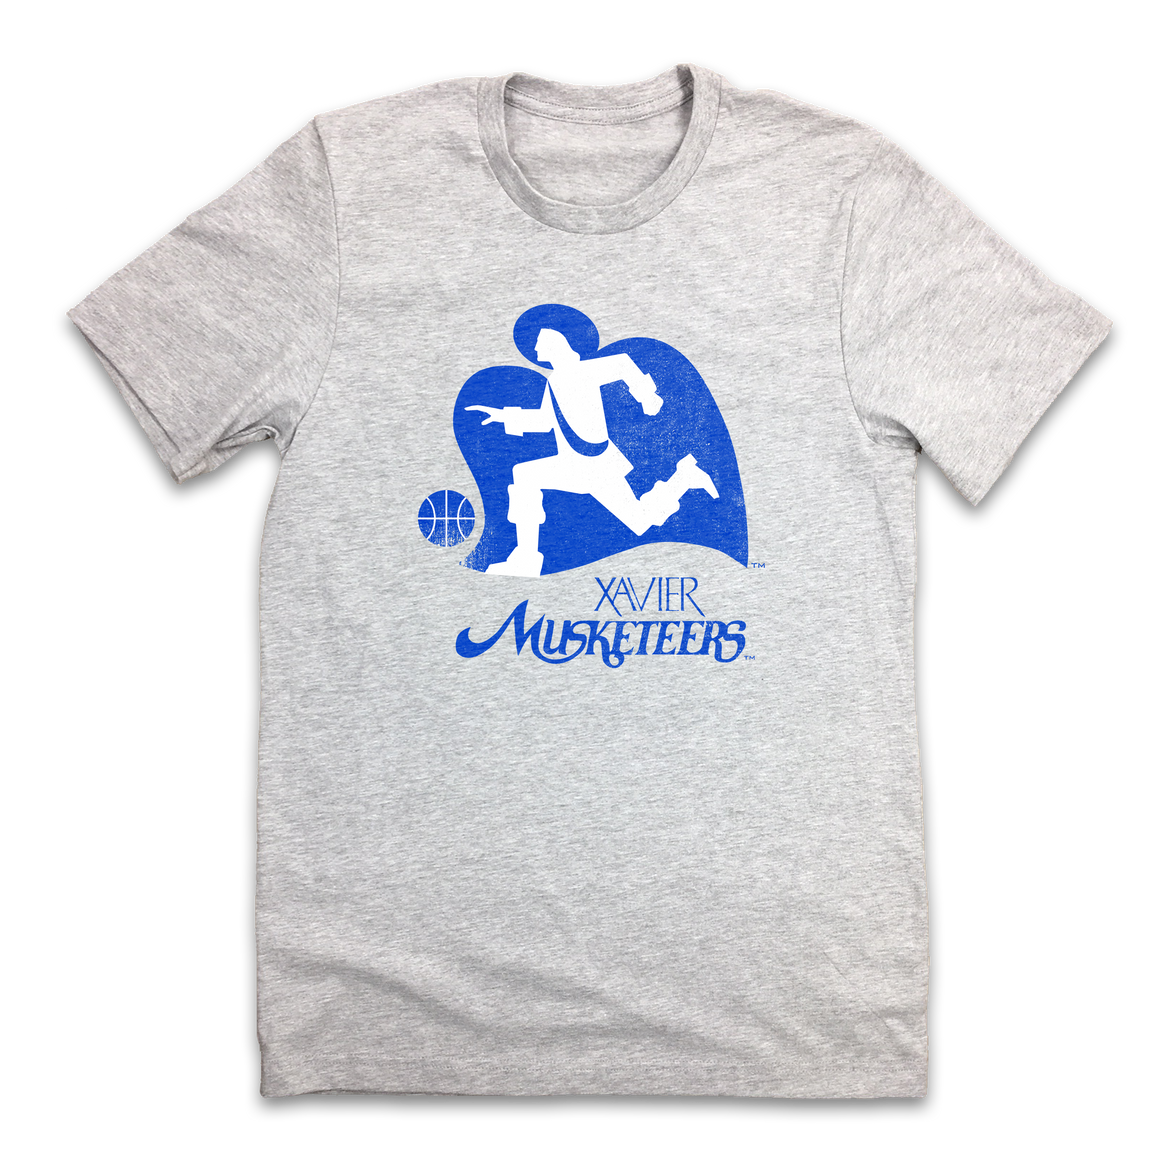 Xavier Musketeers Vintage Logo - Cincy Shirts